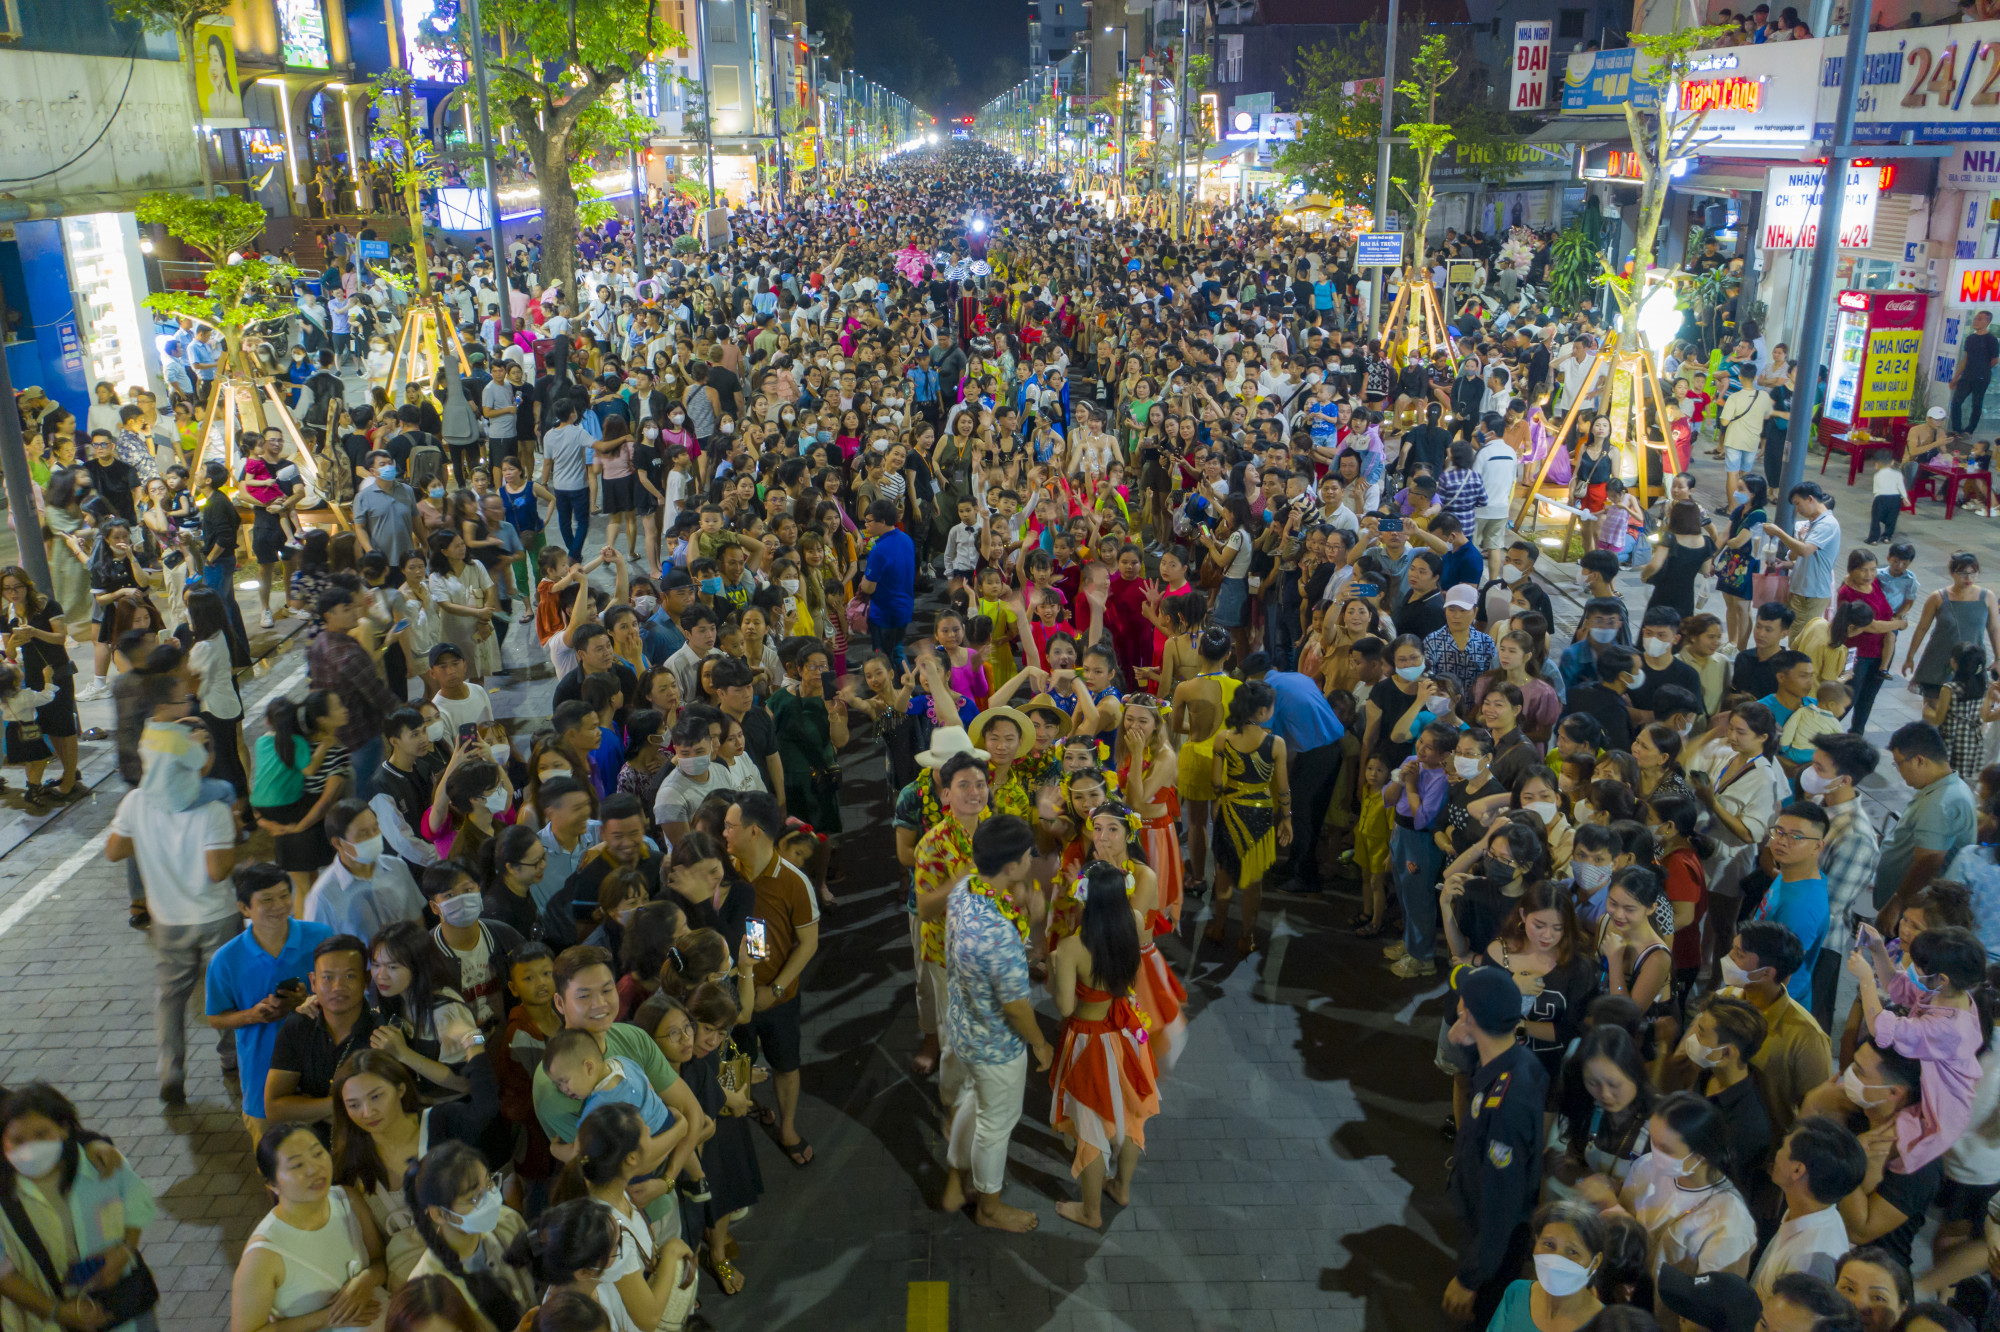 Tối 26/6 hàng vạn người dân xứ Huế đã đến tham quan phố đêm Hai Bà Trưng. Đây được đánh giá là phố đêm sầm uất, sản phẩm du lịch mới của Huế vào dịp cuối tuần